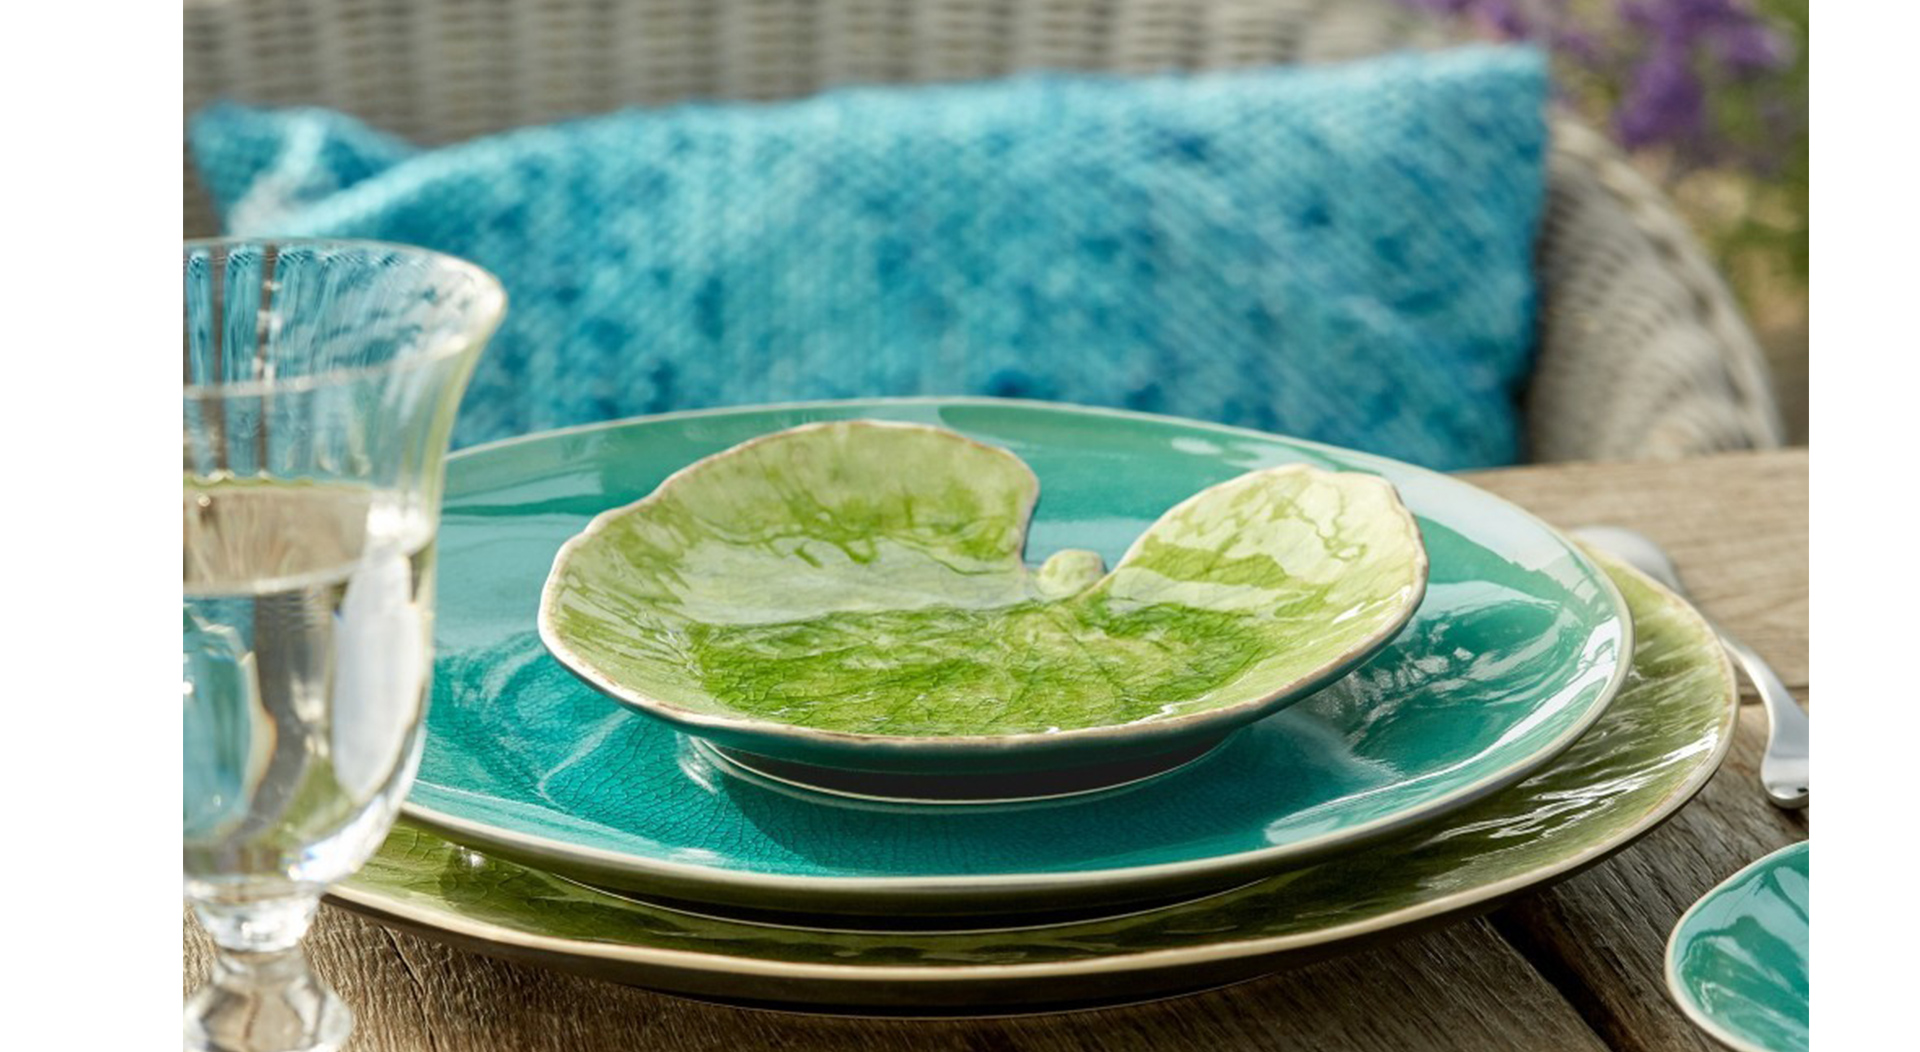 ポルトガルのCOSTA NOVAやイギリスのStonecastの食器は、ヨーロッパの自然をモチーフにした色やデザインが自然で食卓にもなじむ食器gが多く展開されています。春にぴったりの、やさしく明るい緑色の食器を集めました。